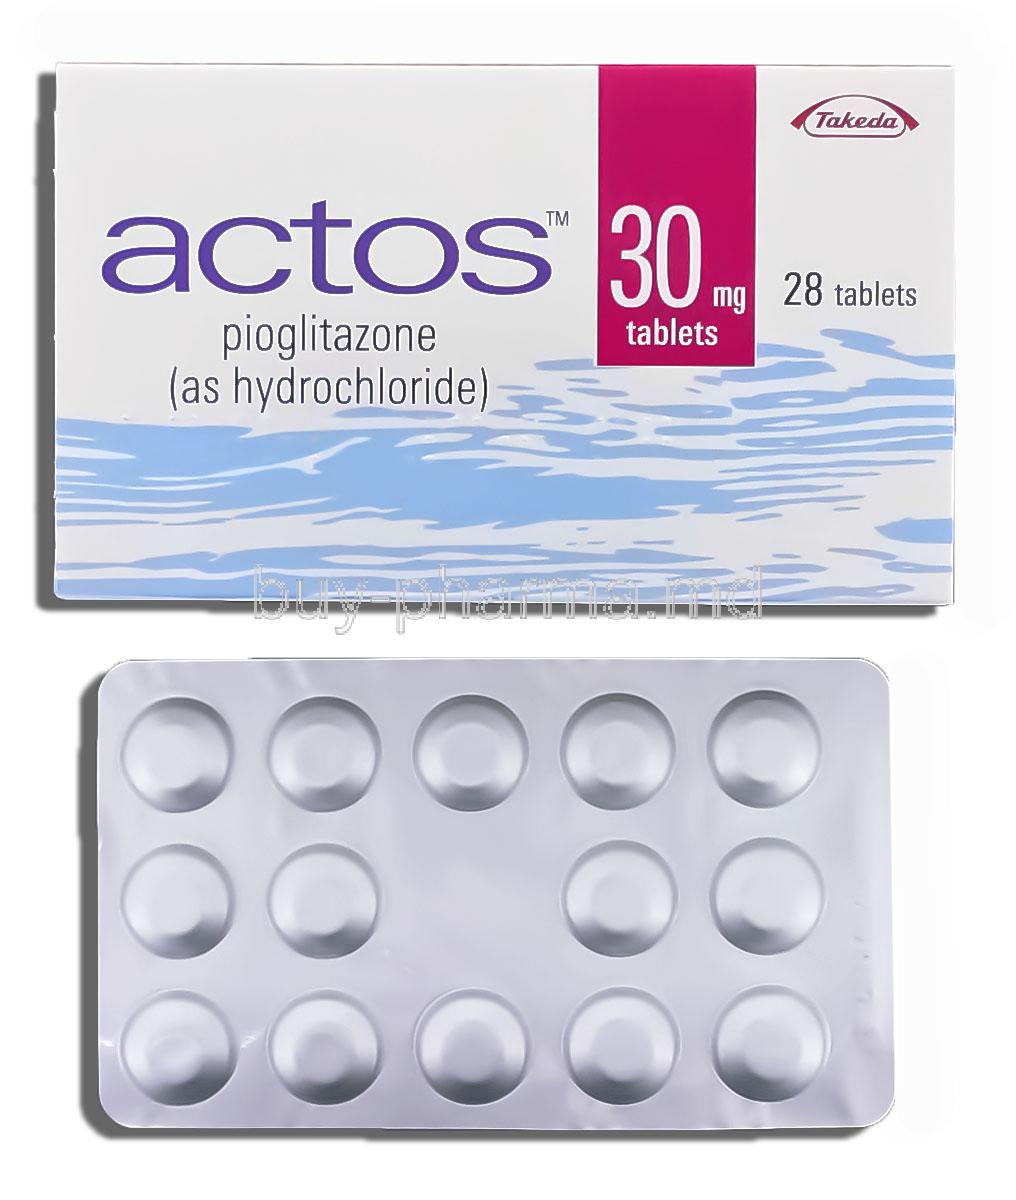 Actos 30 mg